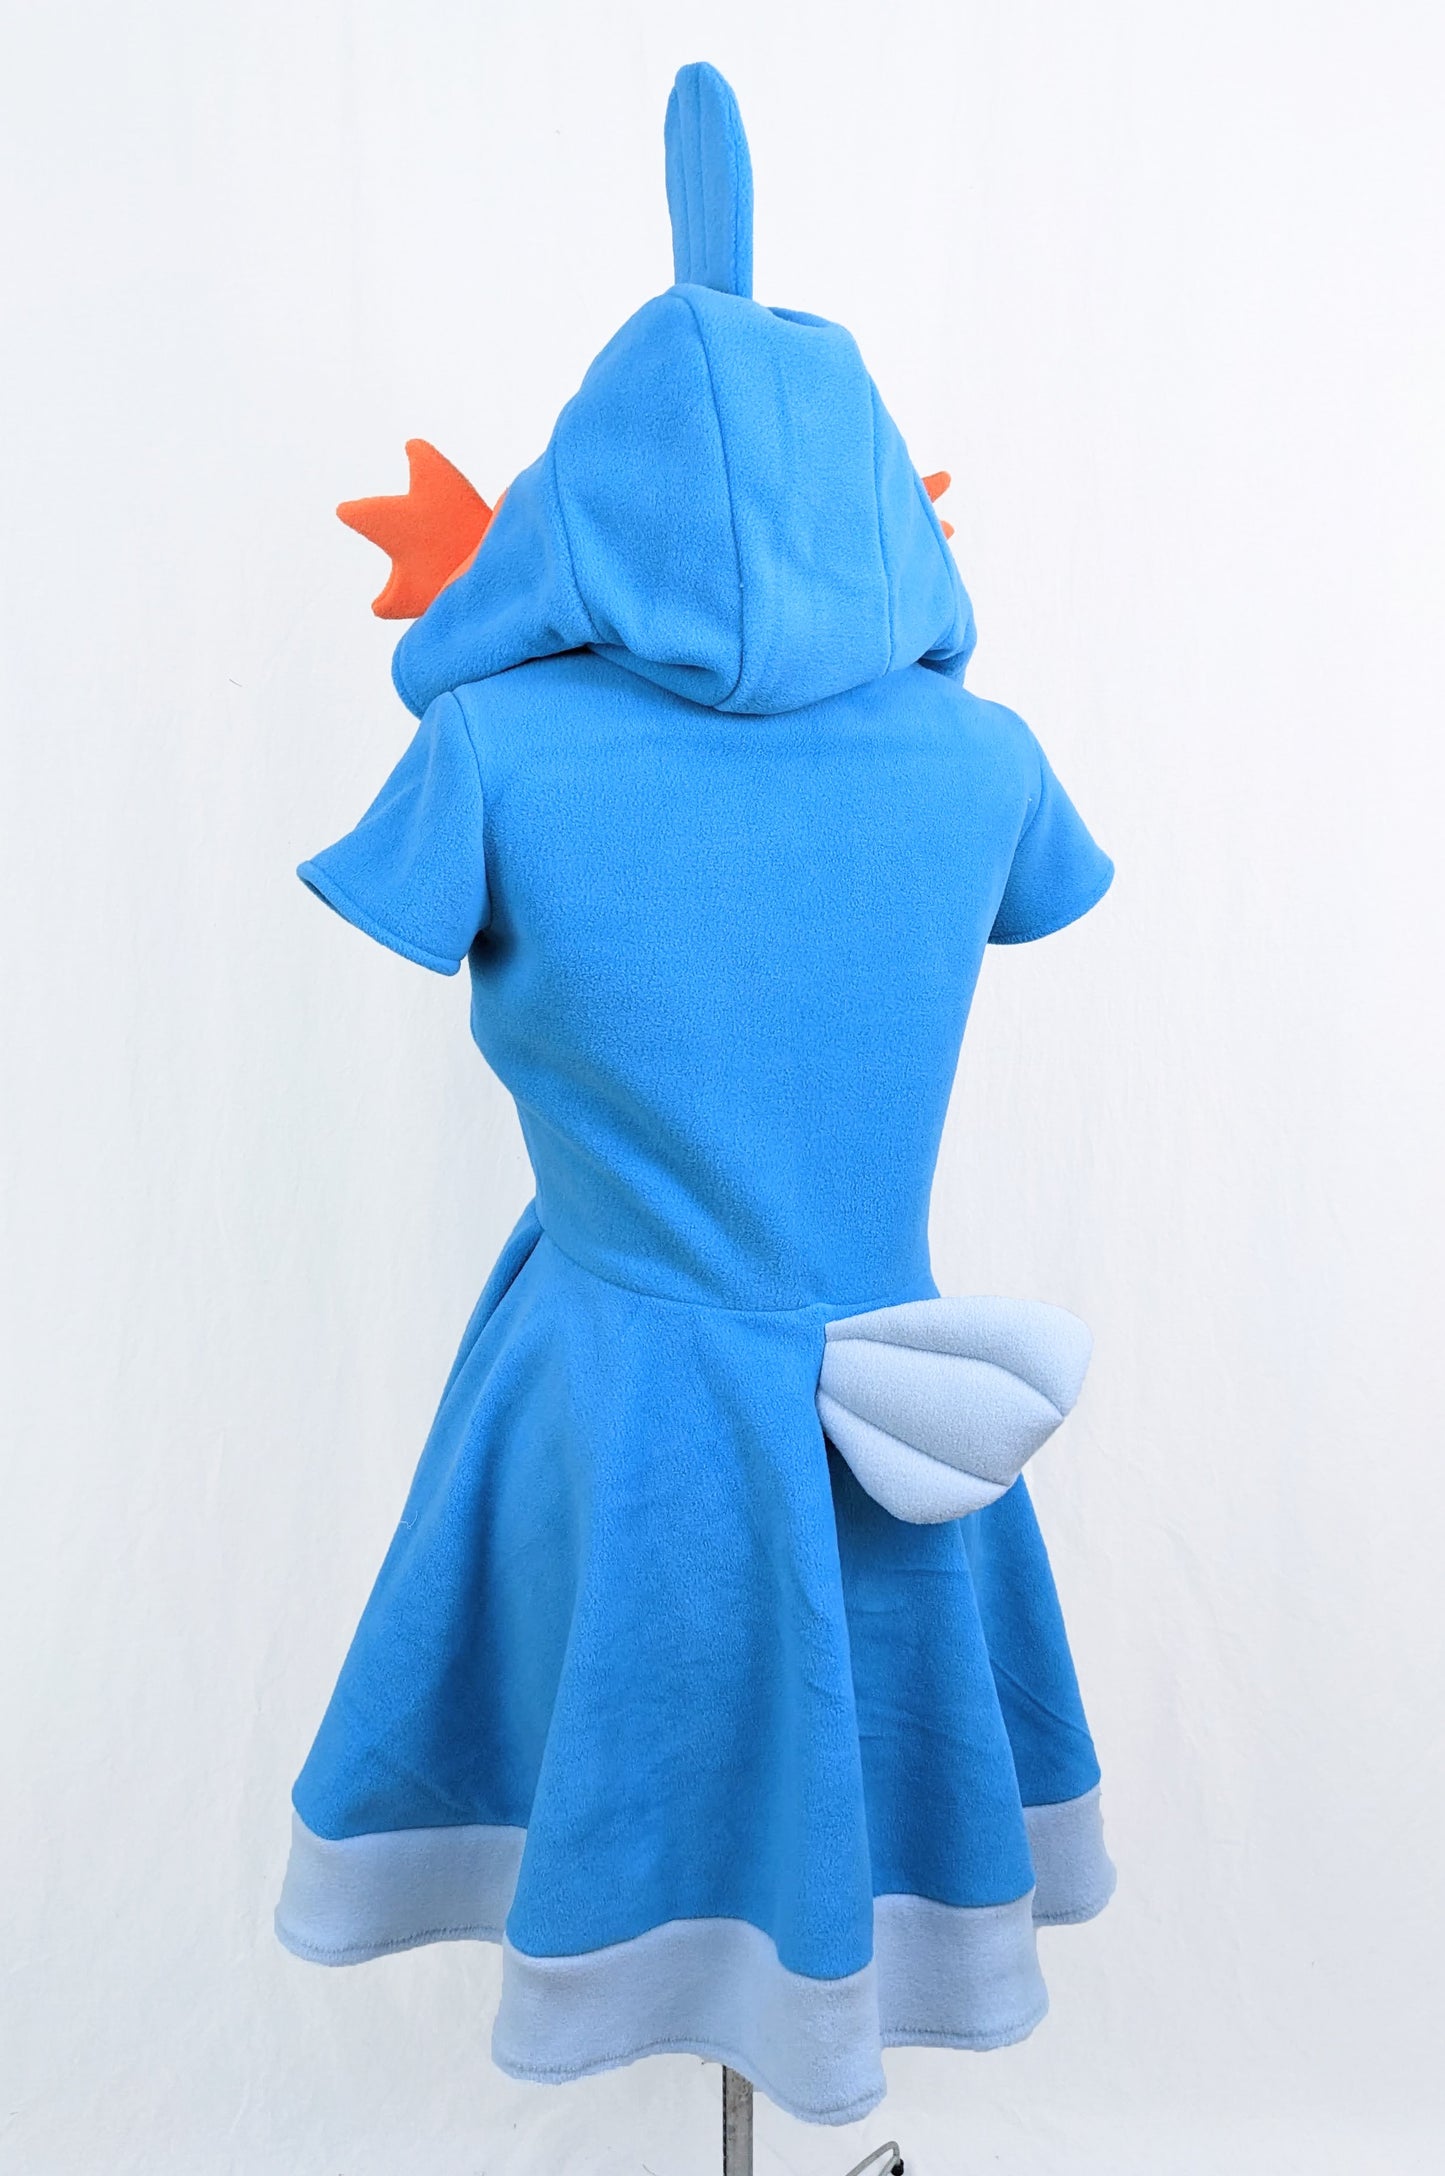 Mudkip Inspired Kigurumi Dress